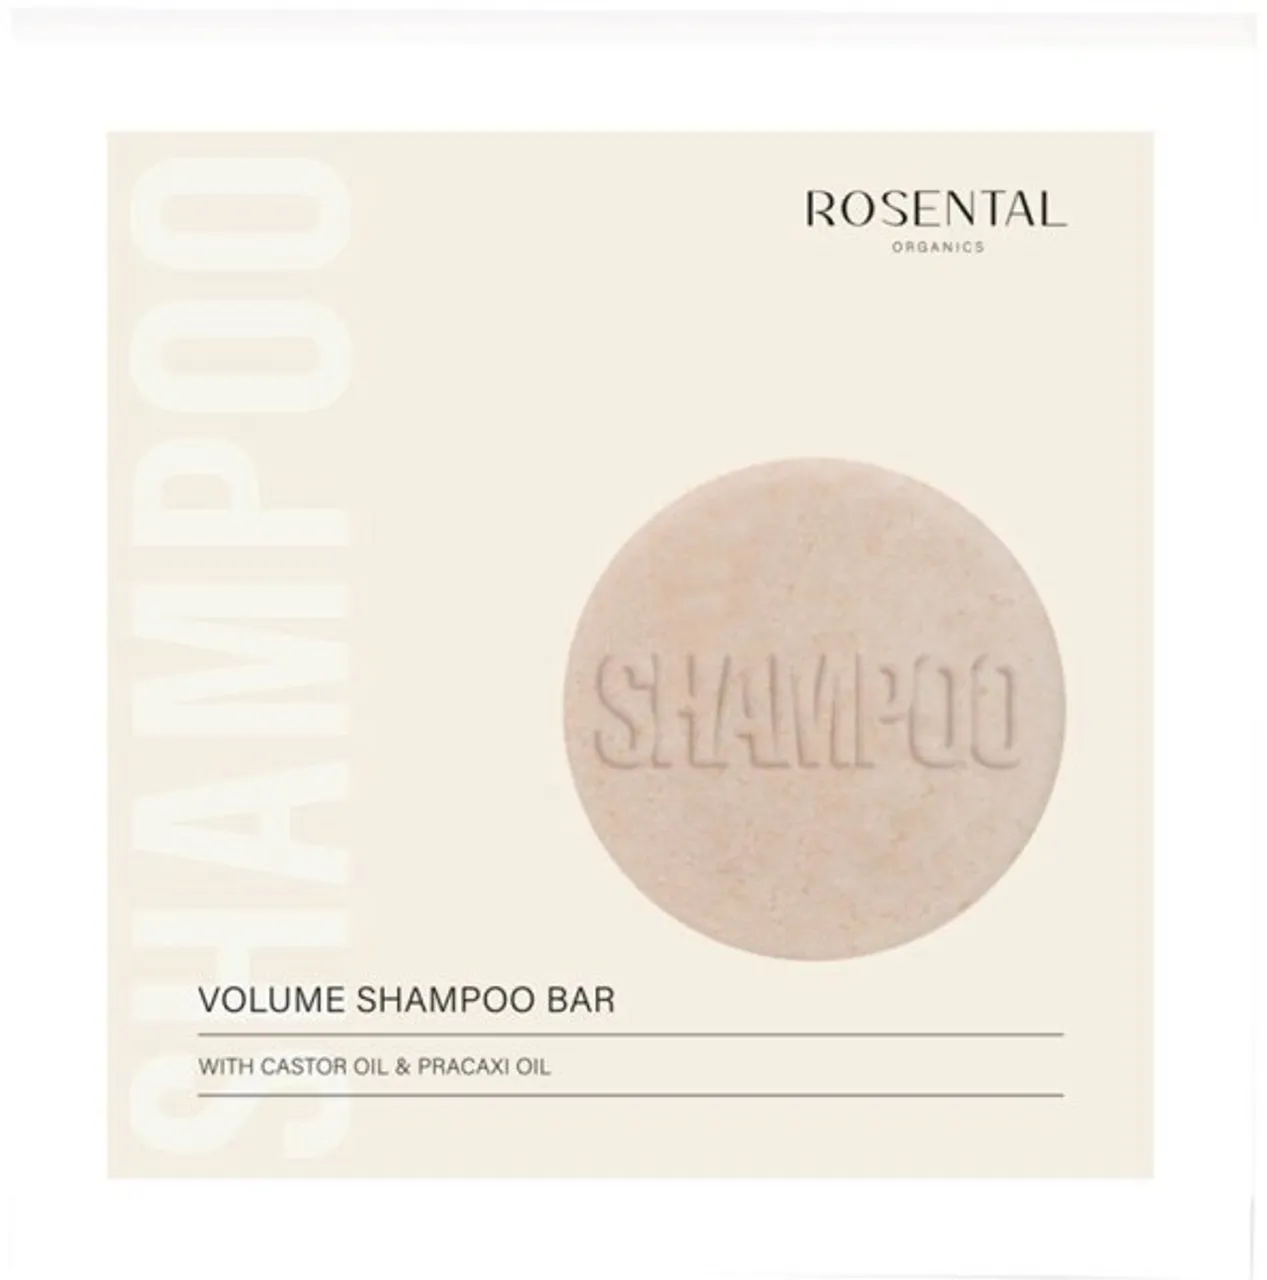 Rosental Organics Volume Shampoo Bar 55 g